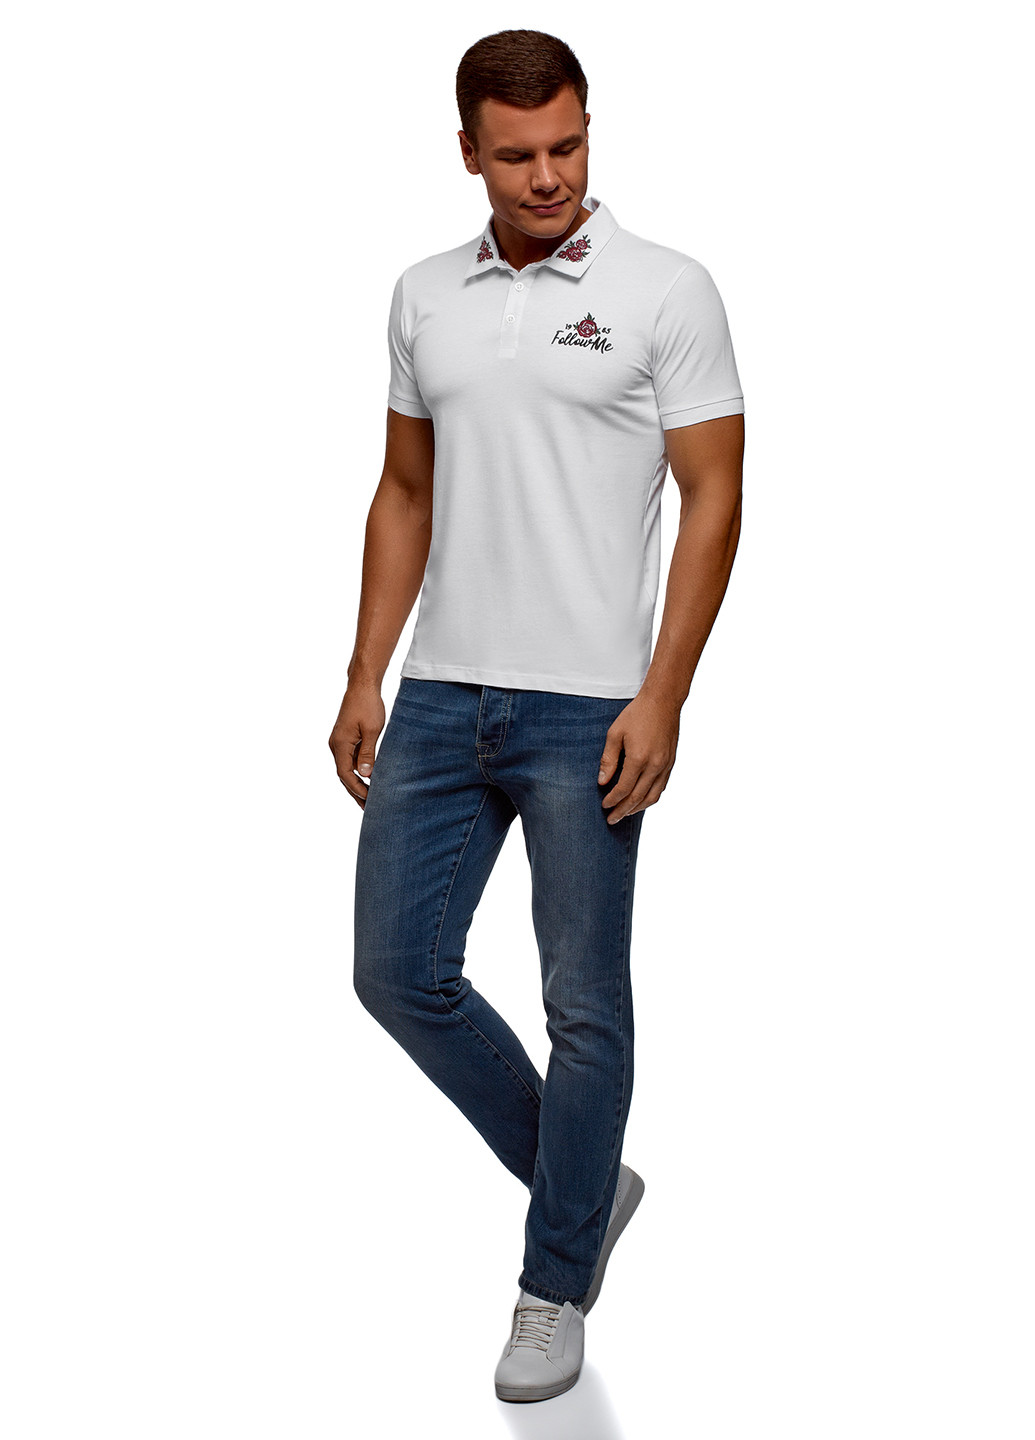 Белая футболка-поло для мужчин Oodji с рисунком